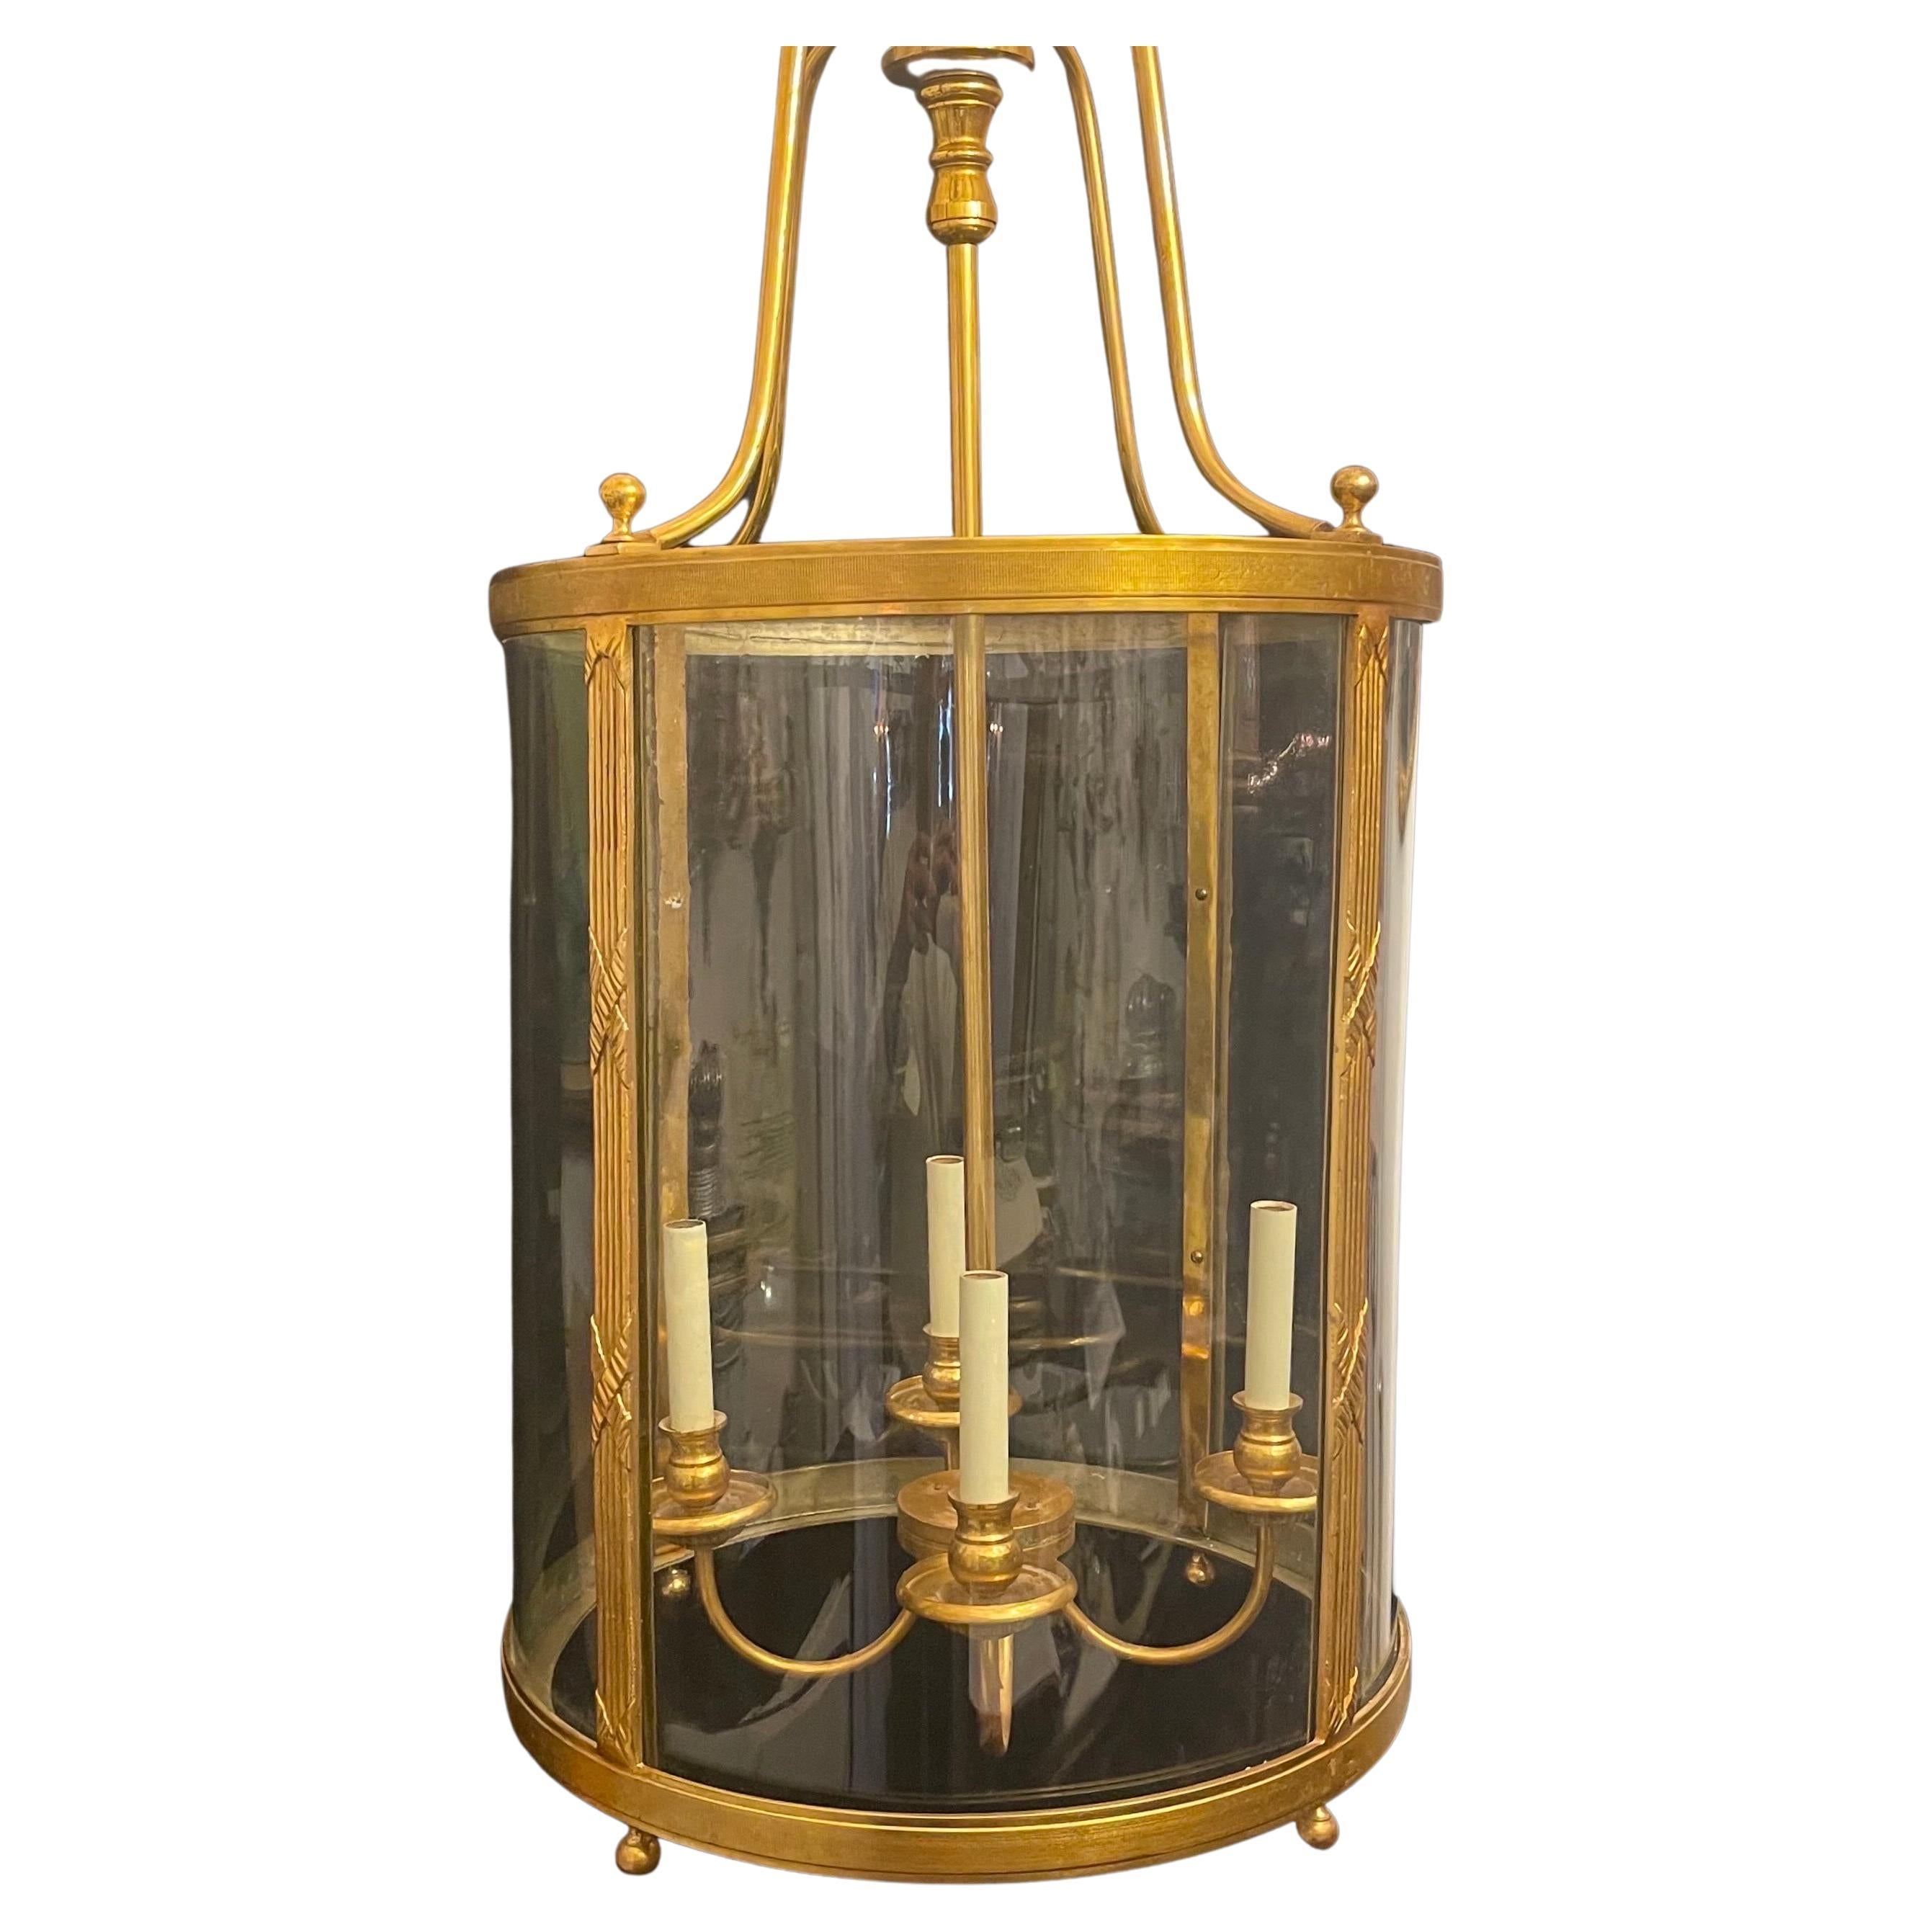 Magnifique lanterne à panneau de verre incurvé de style Regency / Empire en bronze français avec 4 lampes candélabres.